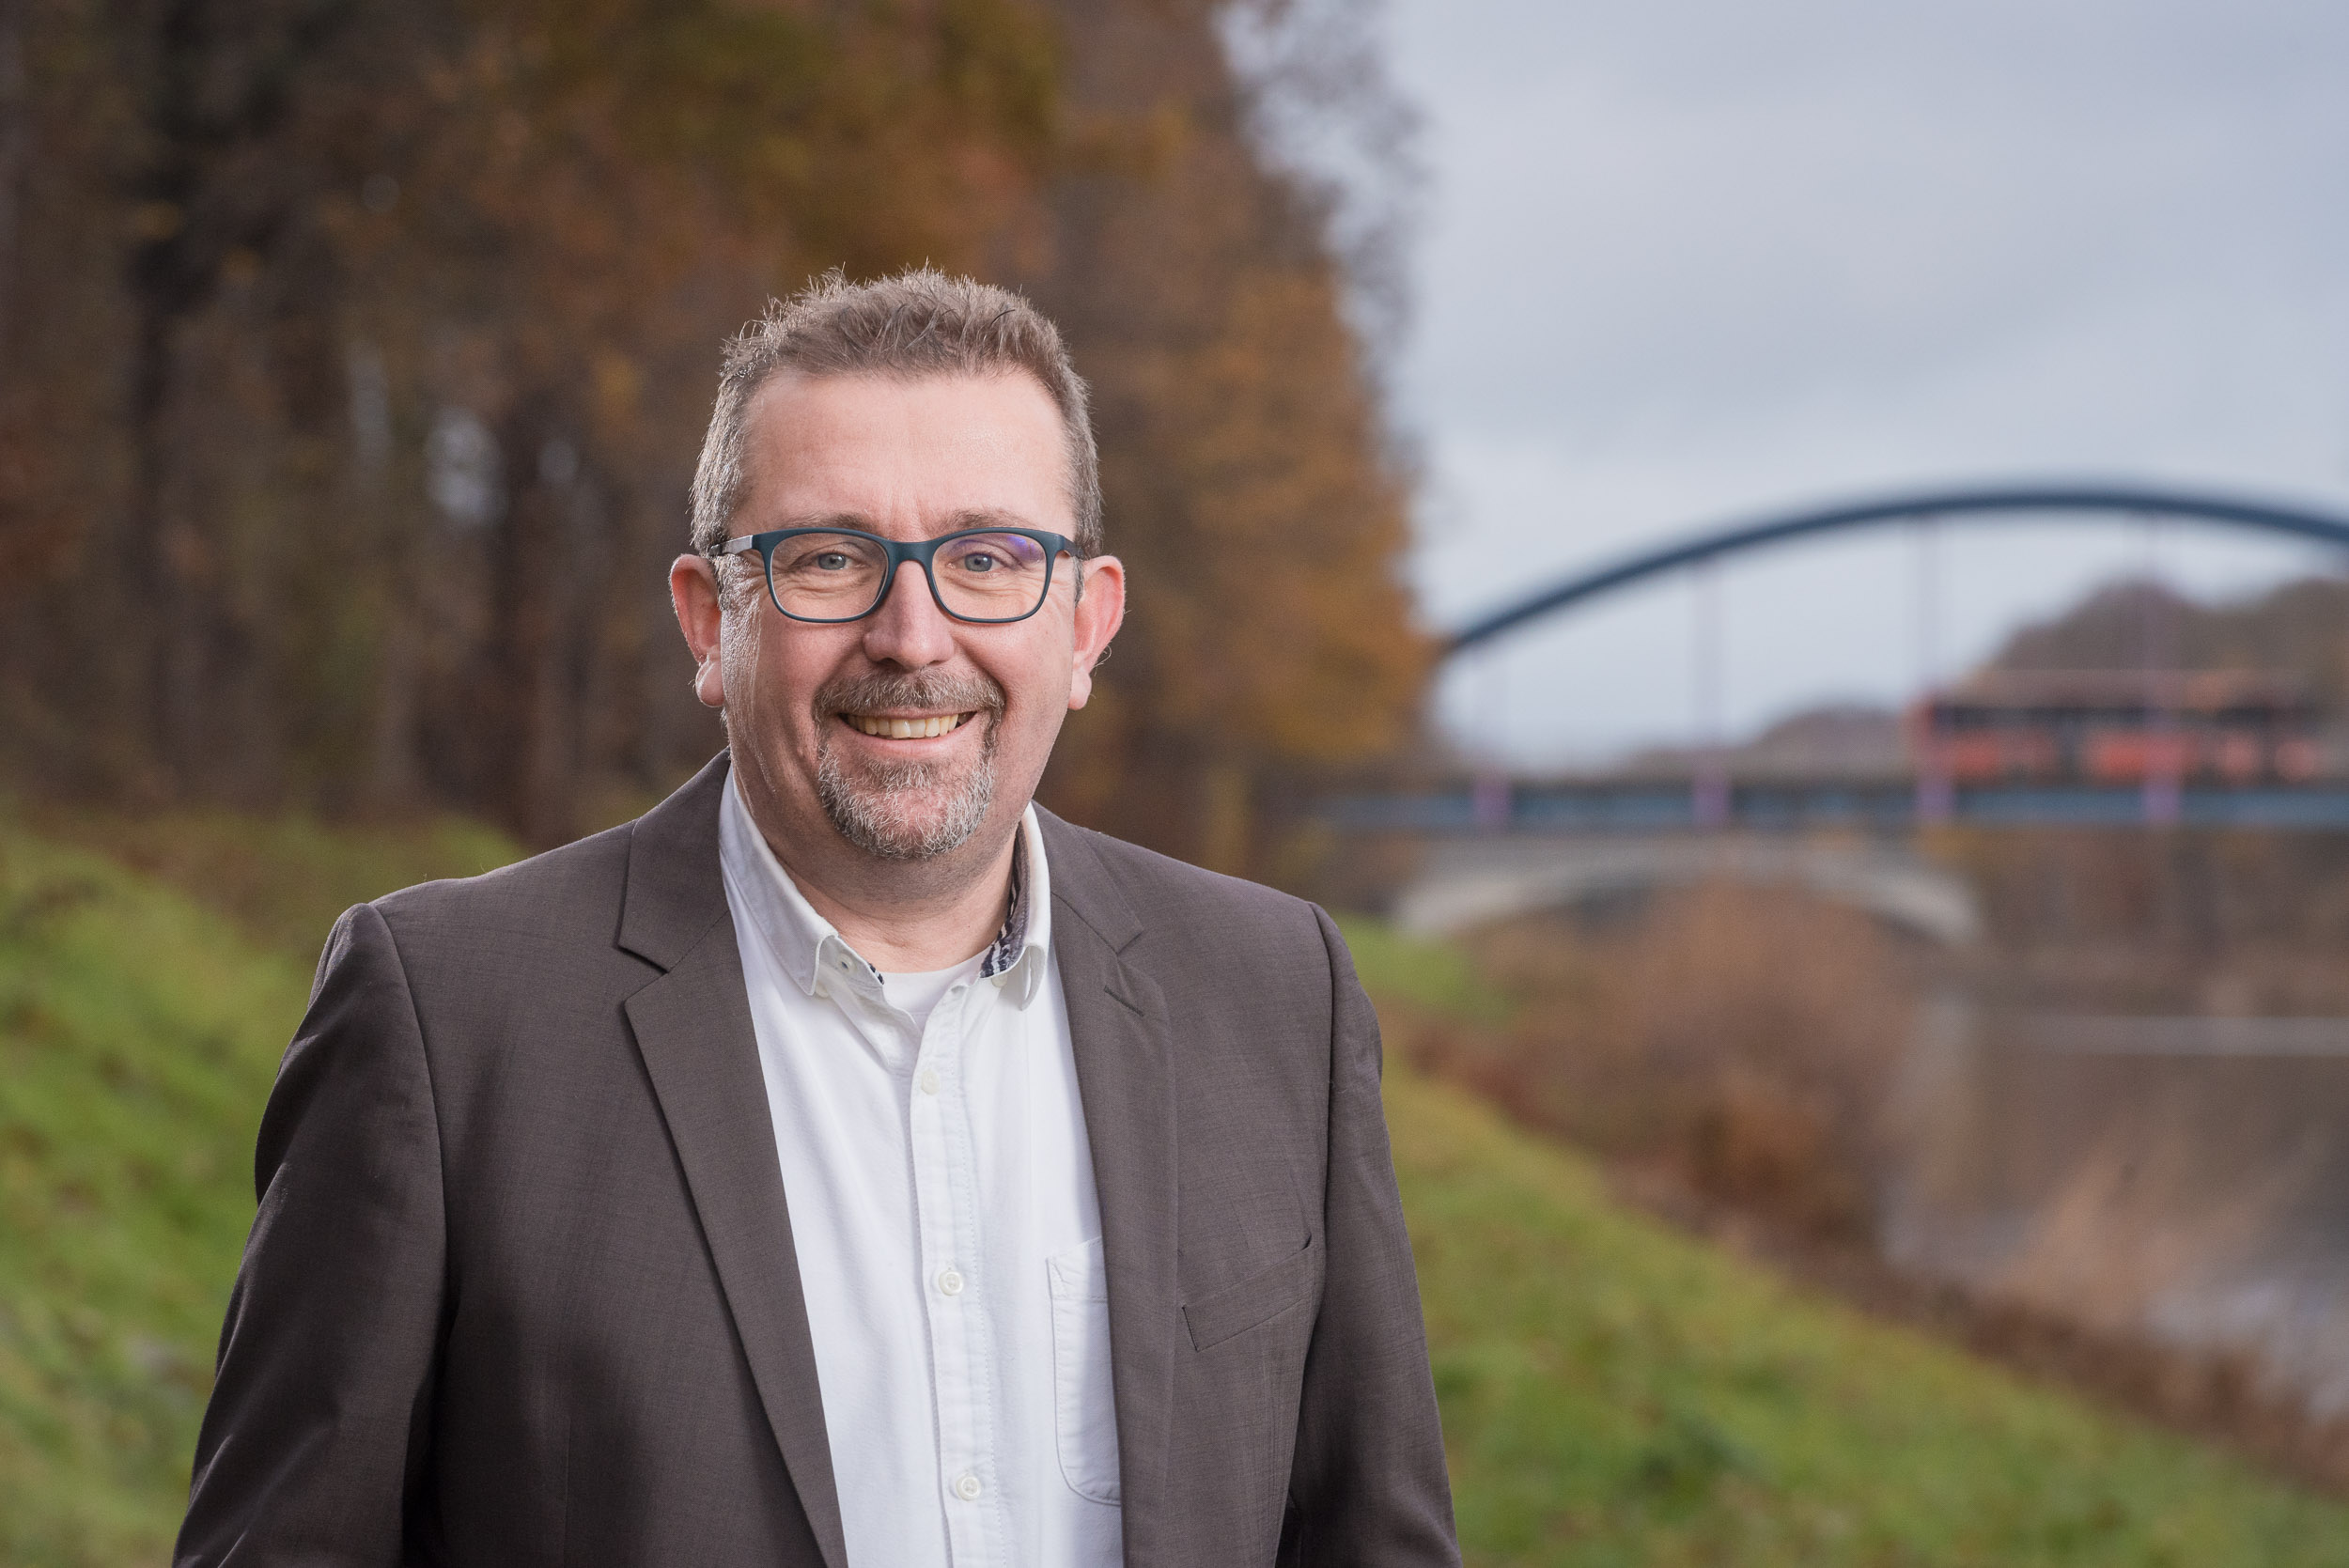 Matthias Brinkmann ist Bürgermeisterkandidat für die Partei Bündnis 90 / Die Grünen für die Gemeinde Algermissen.